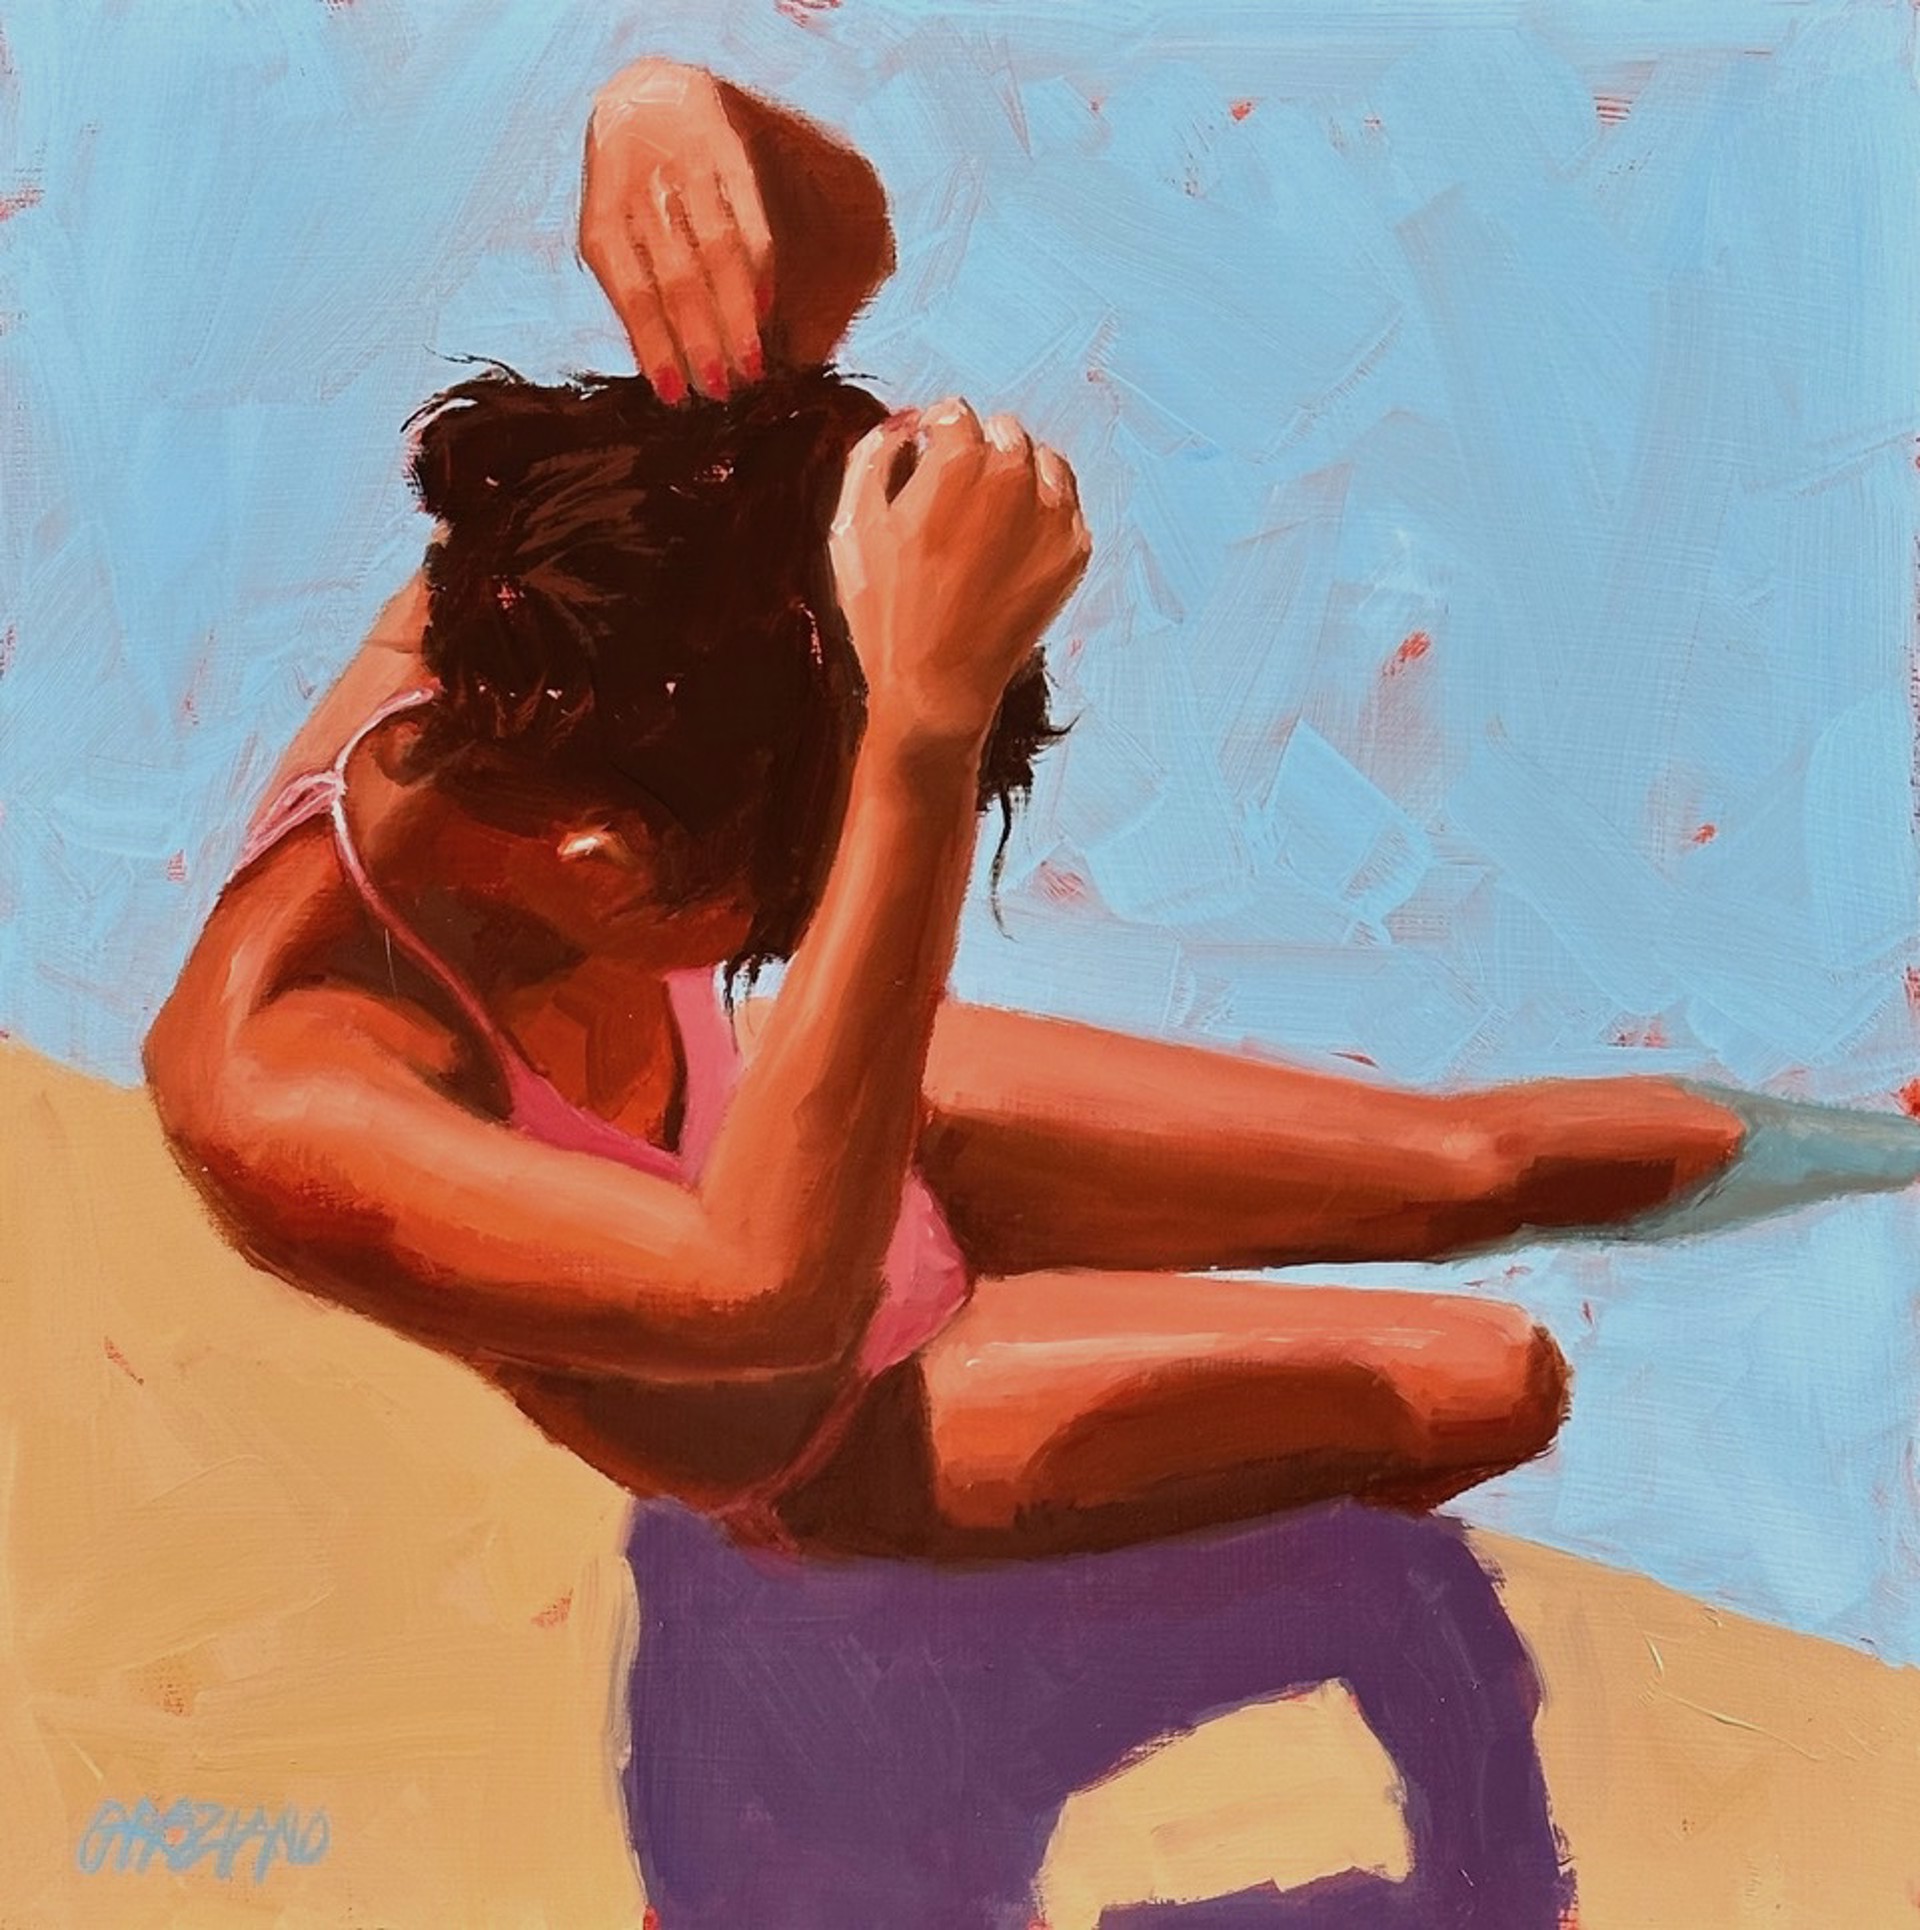 Poolside Girl #1 by Dan Graziano